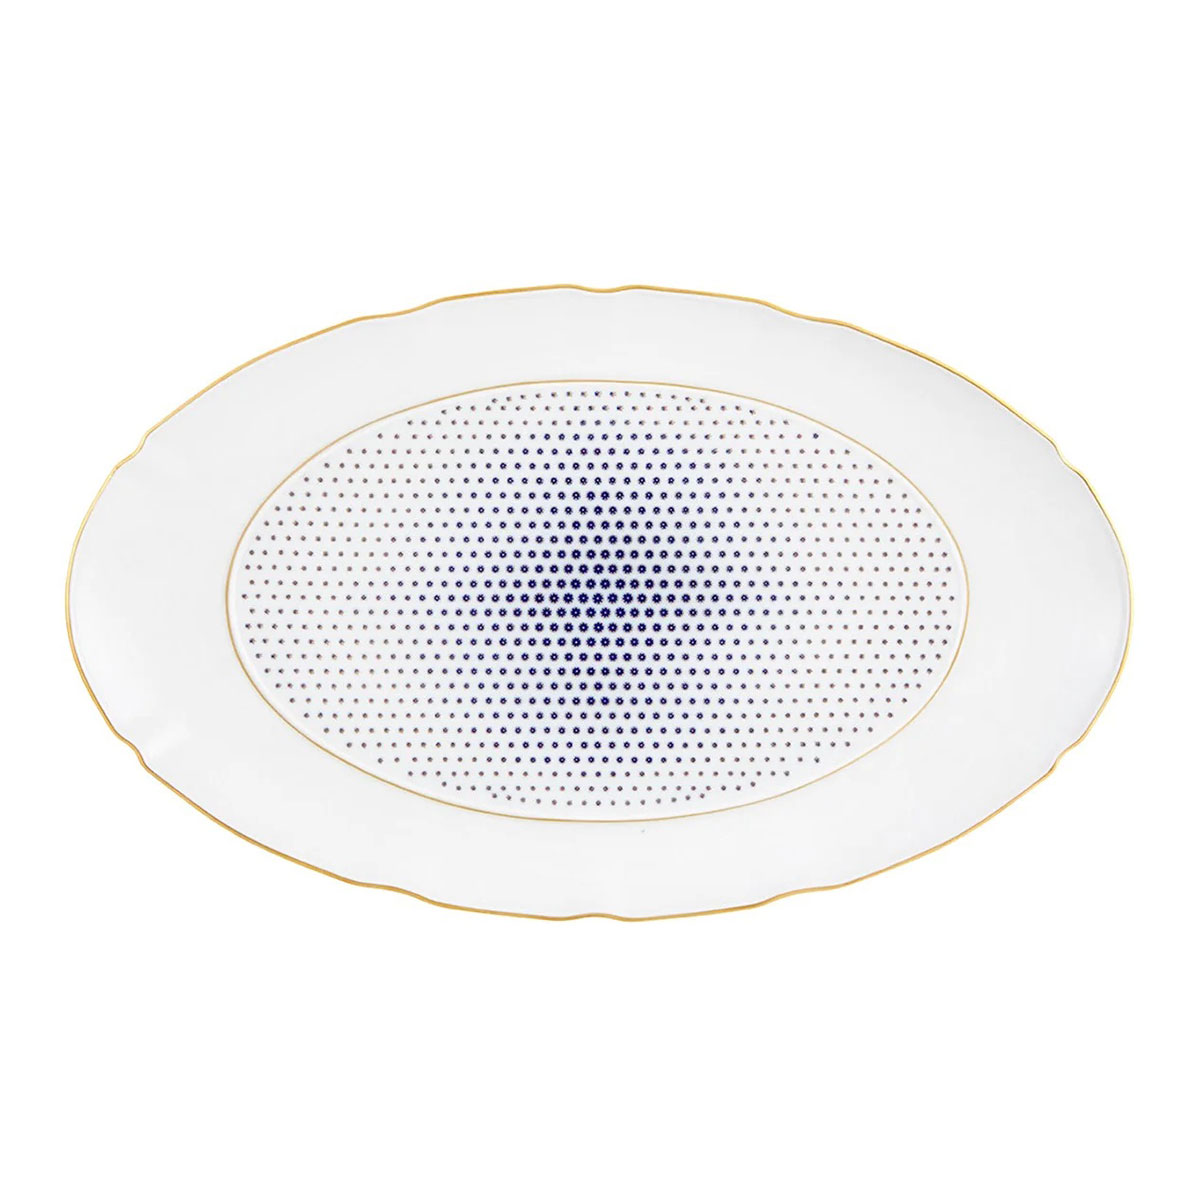 Vista Alegre Porcelain Constellation D'Or Large Oval Platter